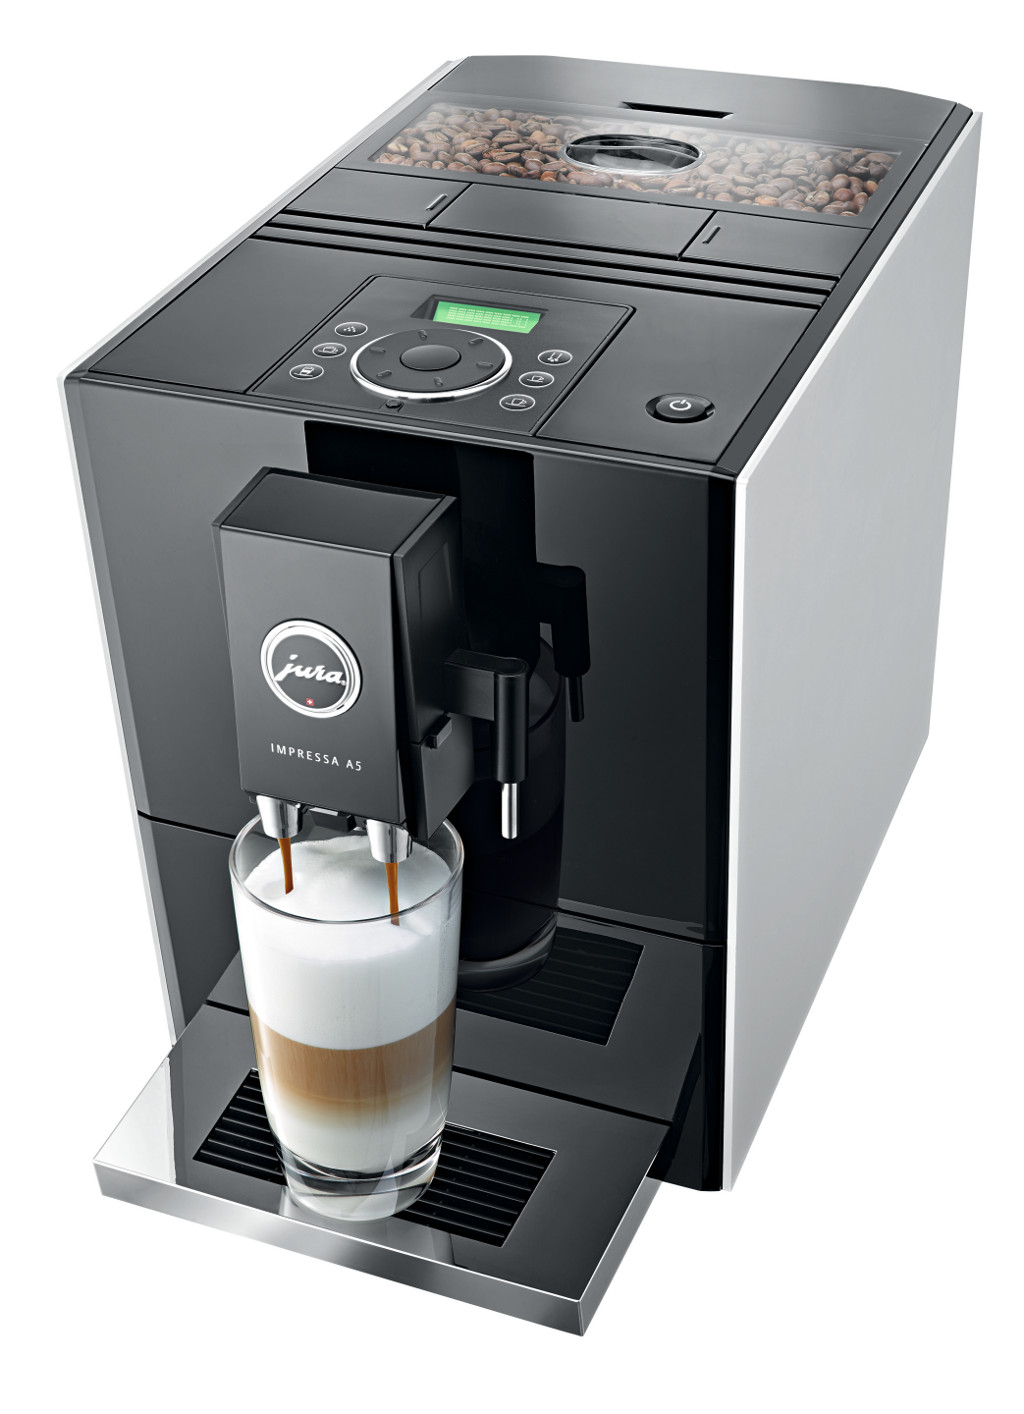 JURA Nederland introduceert de IMPRESSA A5 One Touch: een revolutionaire koffiemachine.